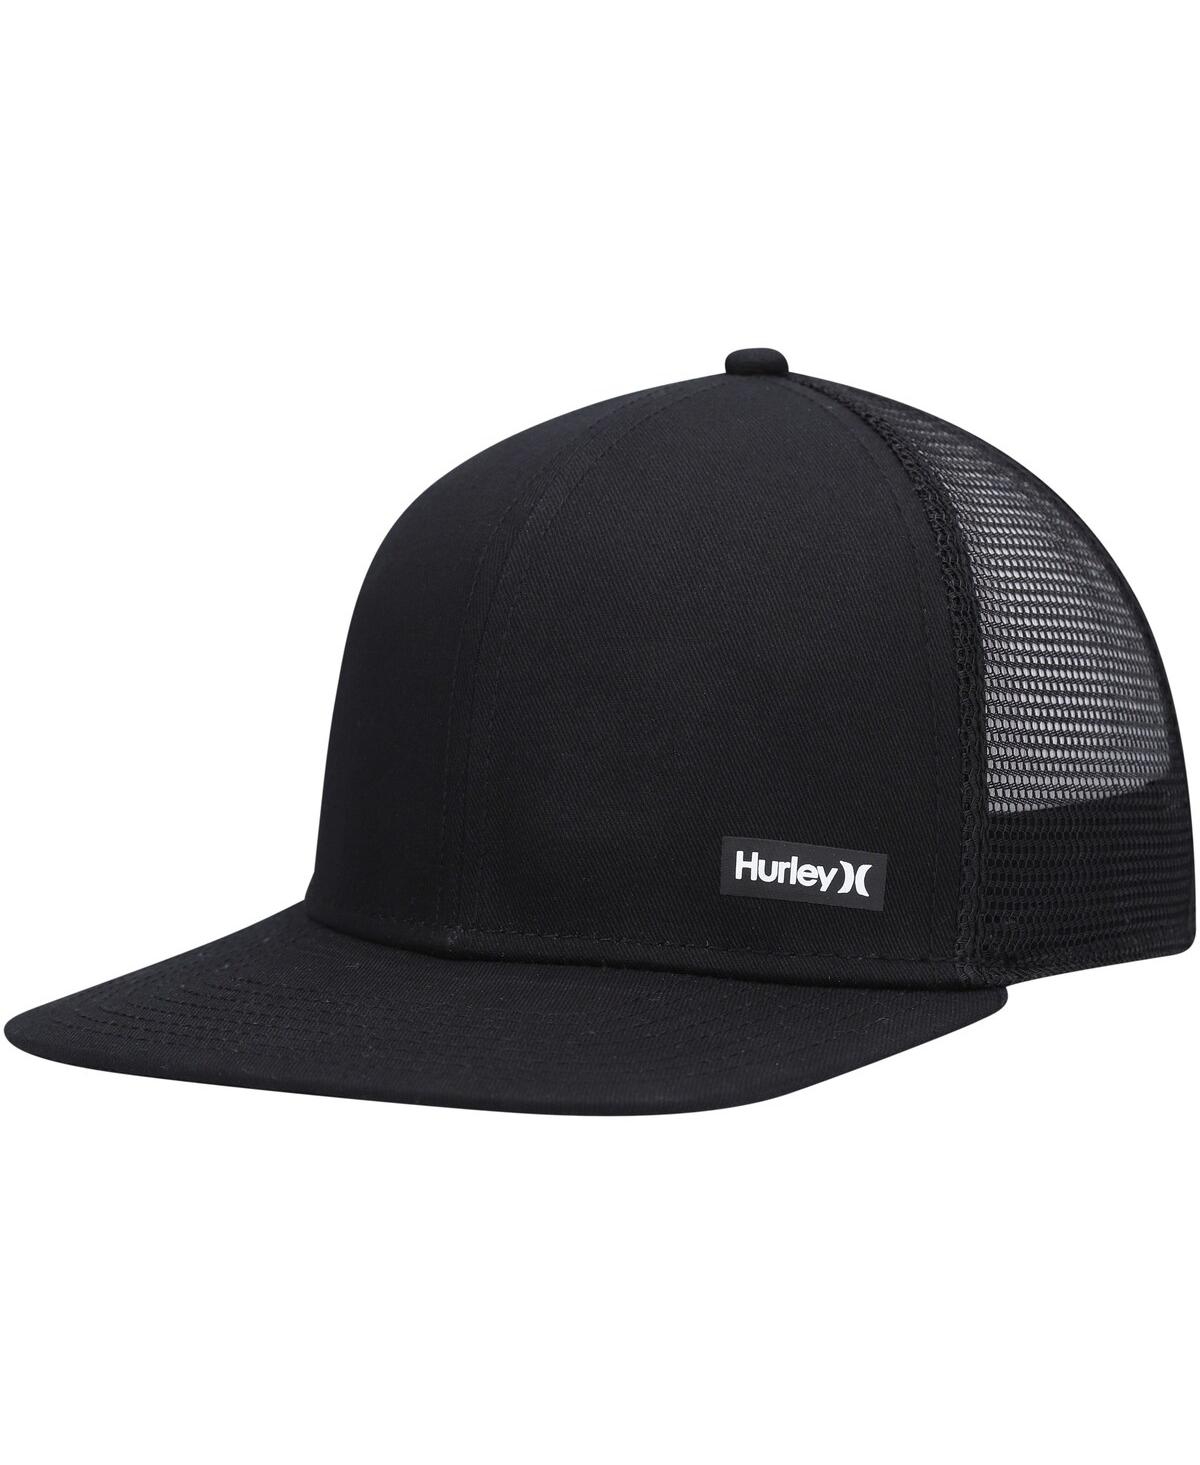 Hurley Men's  Black Supply Trucker Snapback Hat